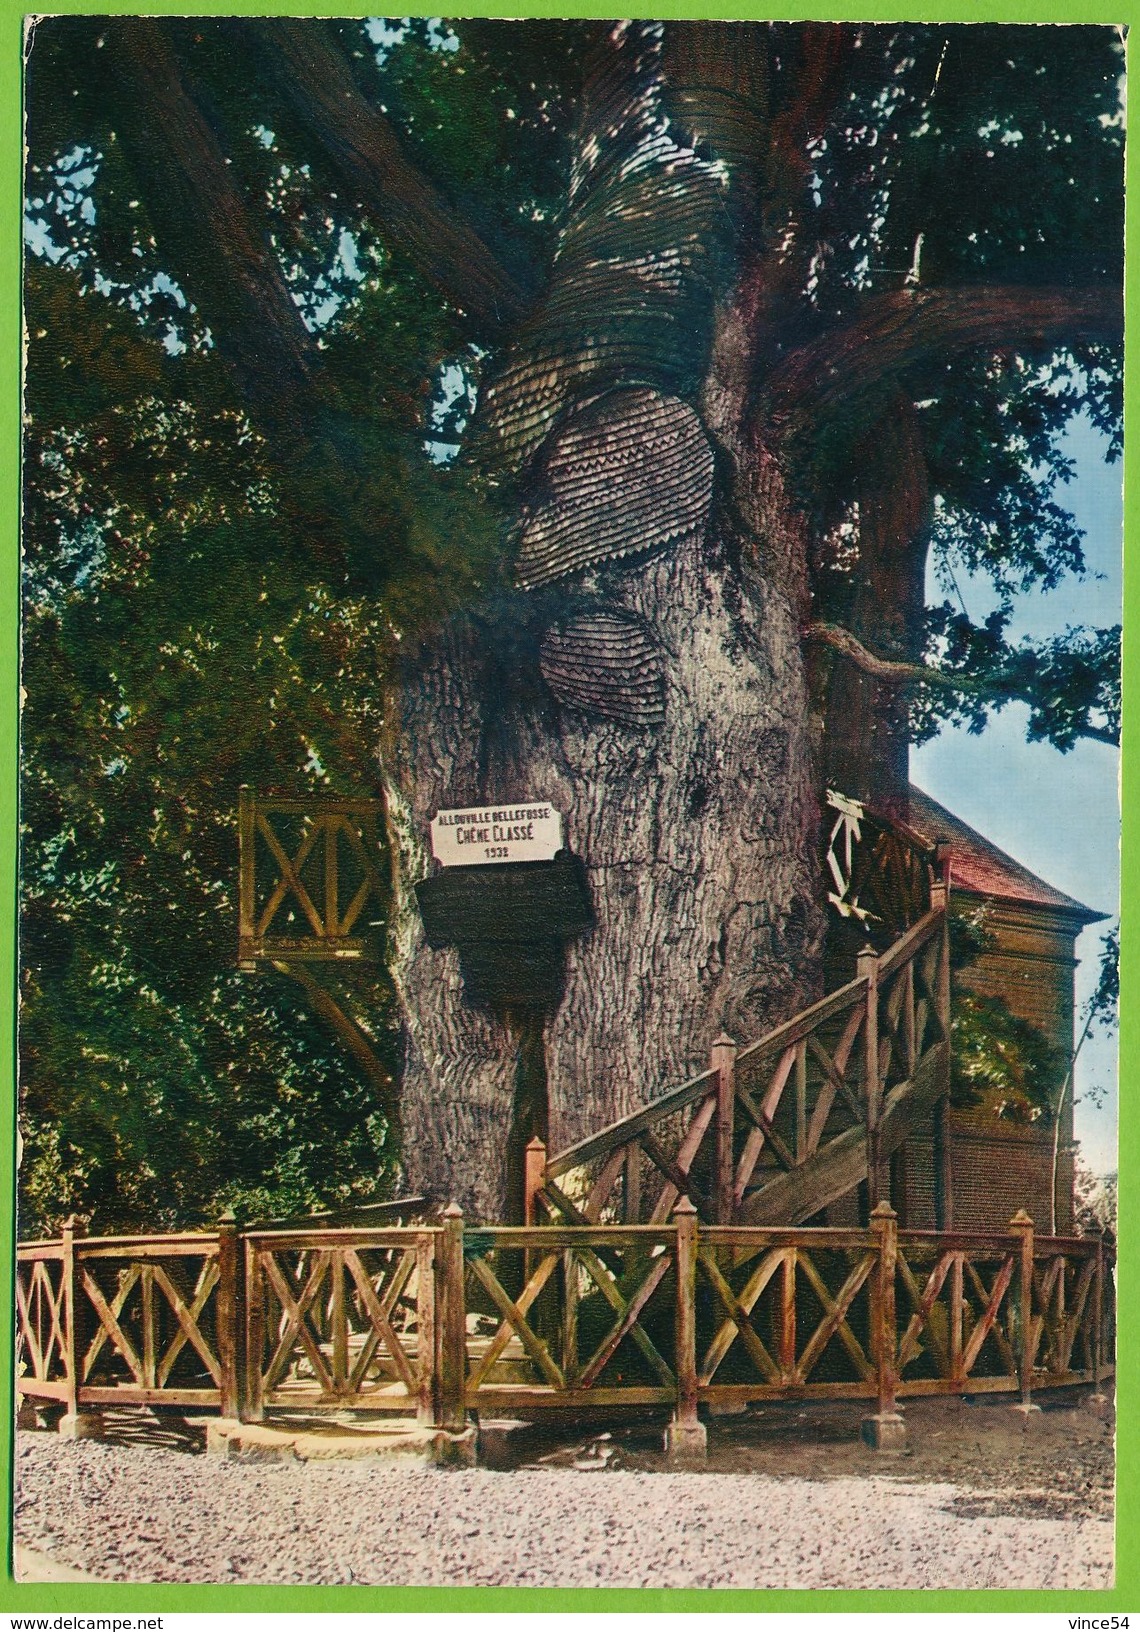 ALLOUVILLE-BELLEFOSSE Près D'YVETOT - Chêne âgé De 1200 Ans - Allouville-Bellefosse